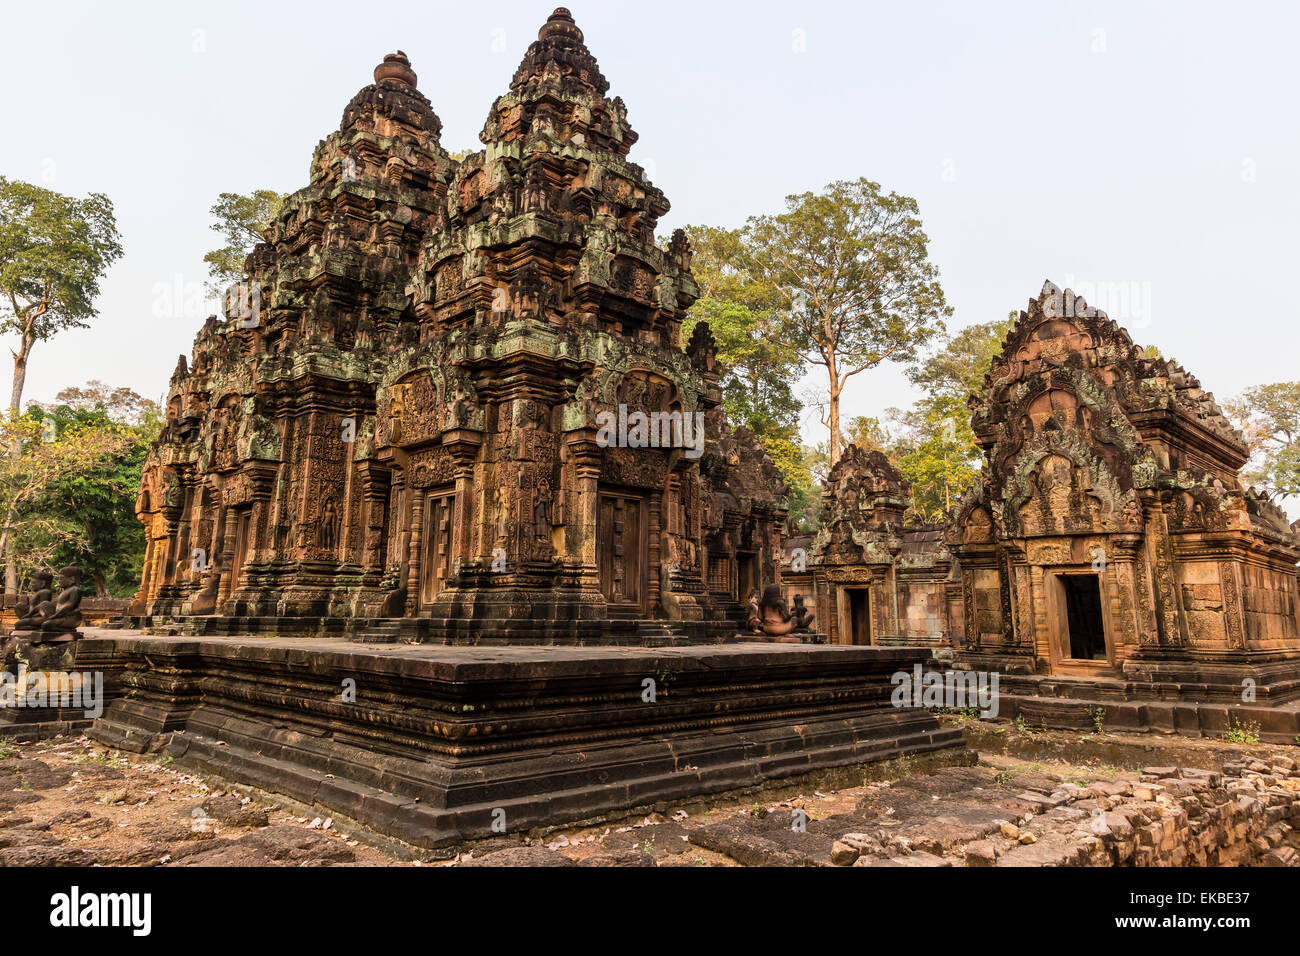 Tallados ornamentados en arenisca roja en Banteay Srei templo de Angkor, la UNESCO, Siem Reap, Camboya, en Indochina, en el sudeste de Asia, Asia Foto de stock